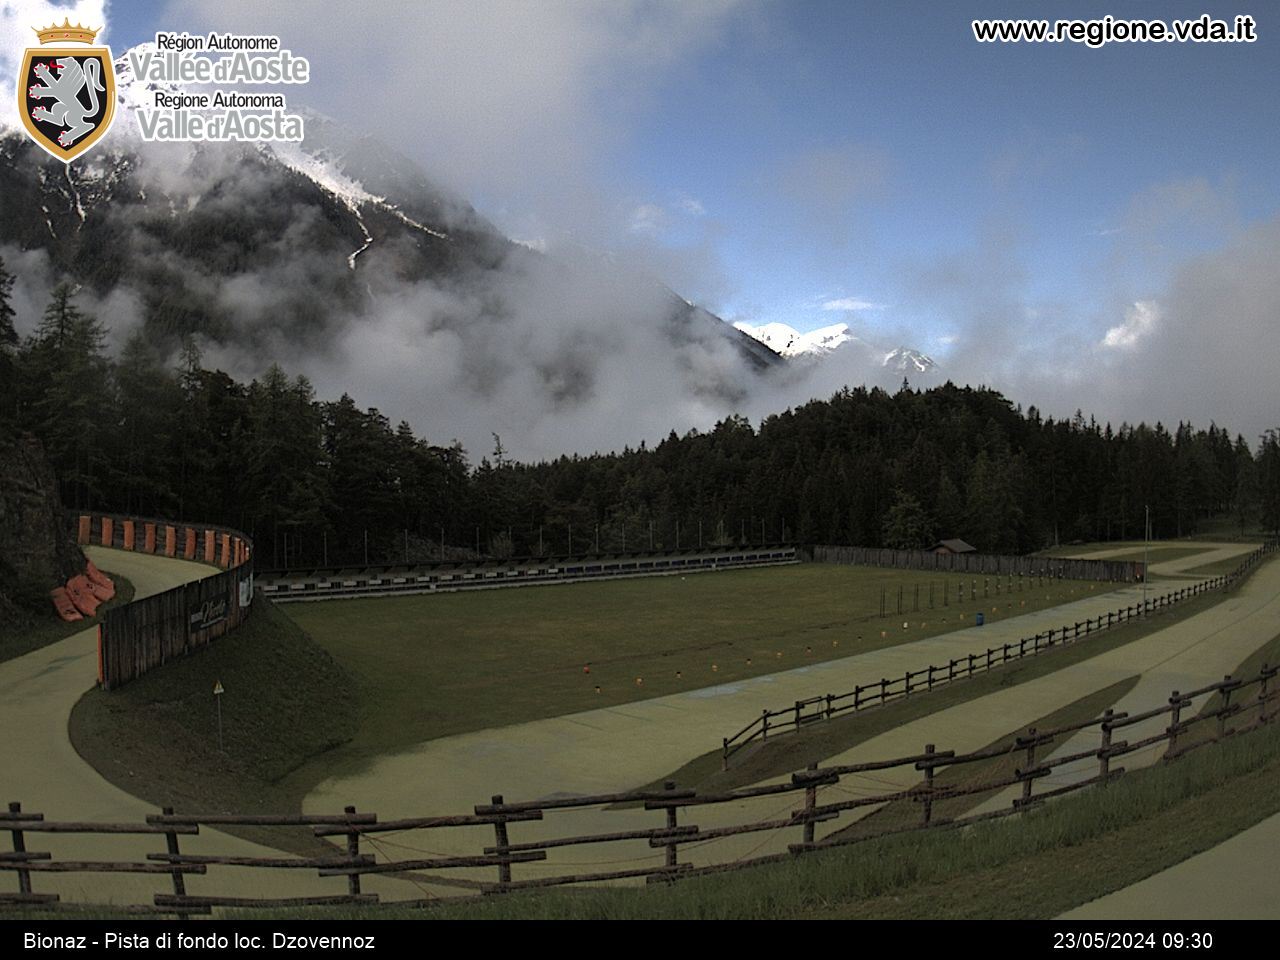 Map of webcams | Aosta Valley